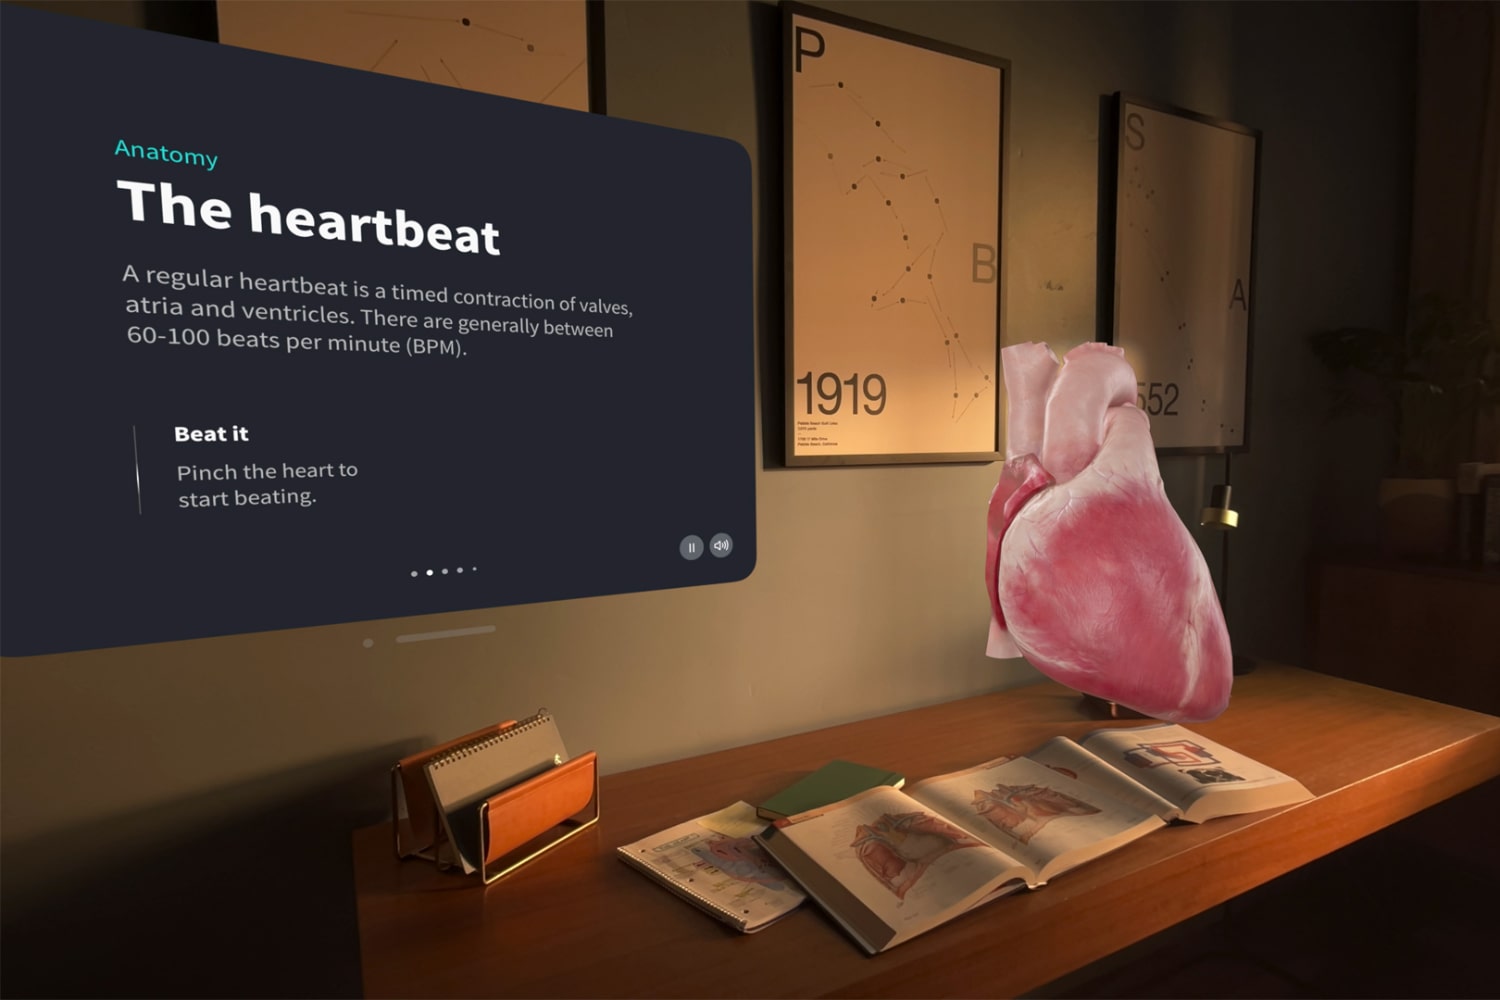 با استفاده از Apple Vision Pro، قلب انسان در واقعیت افزوده روی میز ظاهر می شود، در حالی که یک جعبه متنی که نحوه عملکرد آن را توضیح می دهد، در کنار آن قرار دارد.